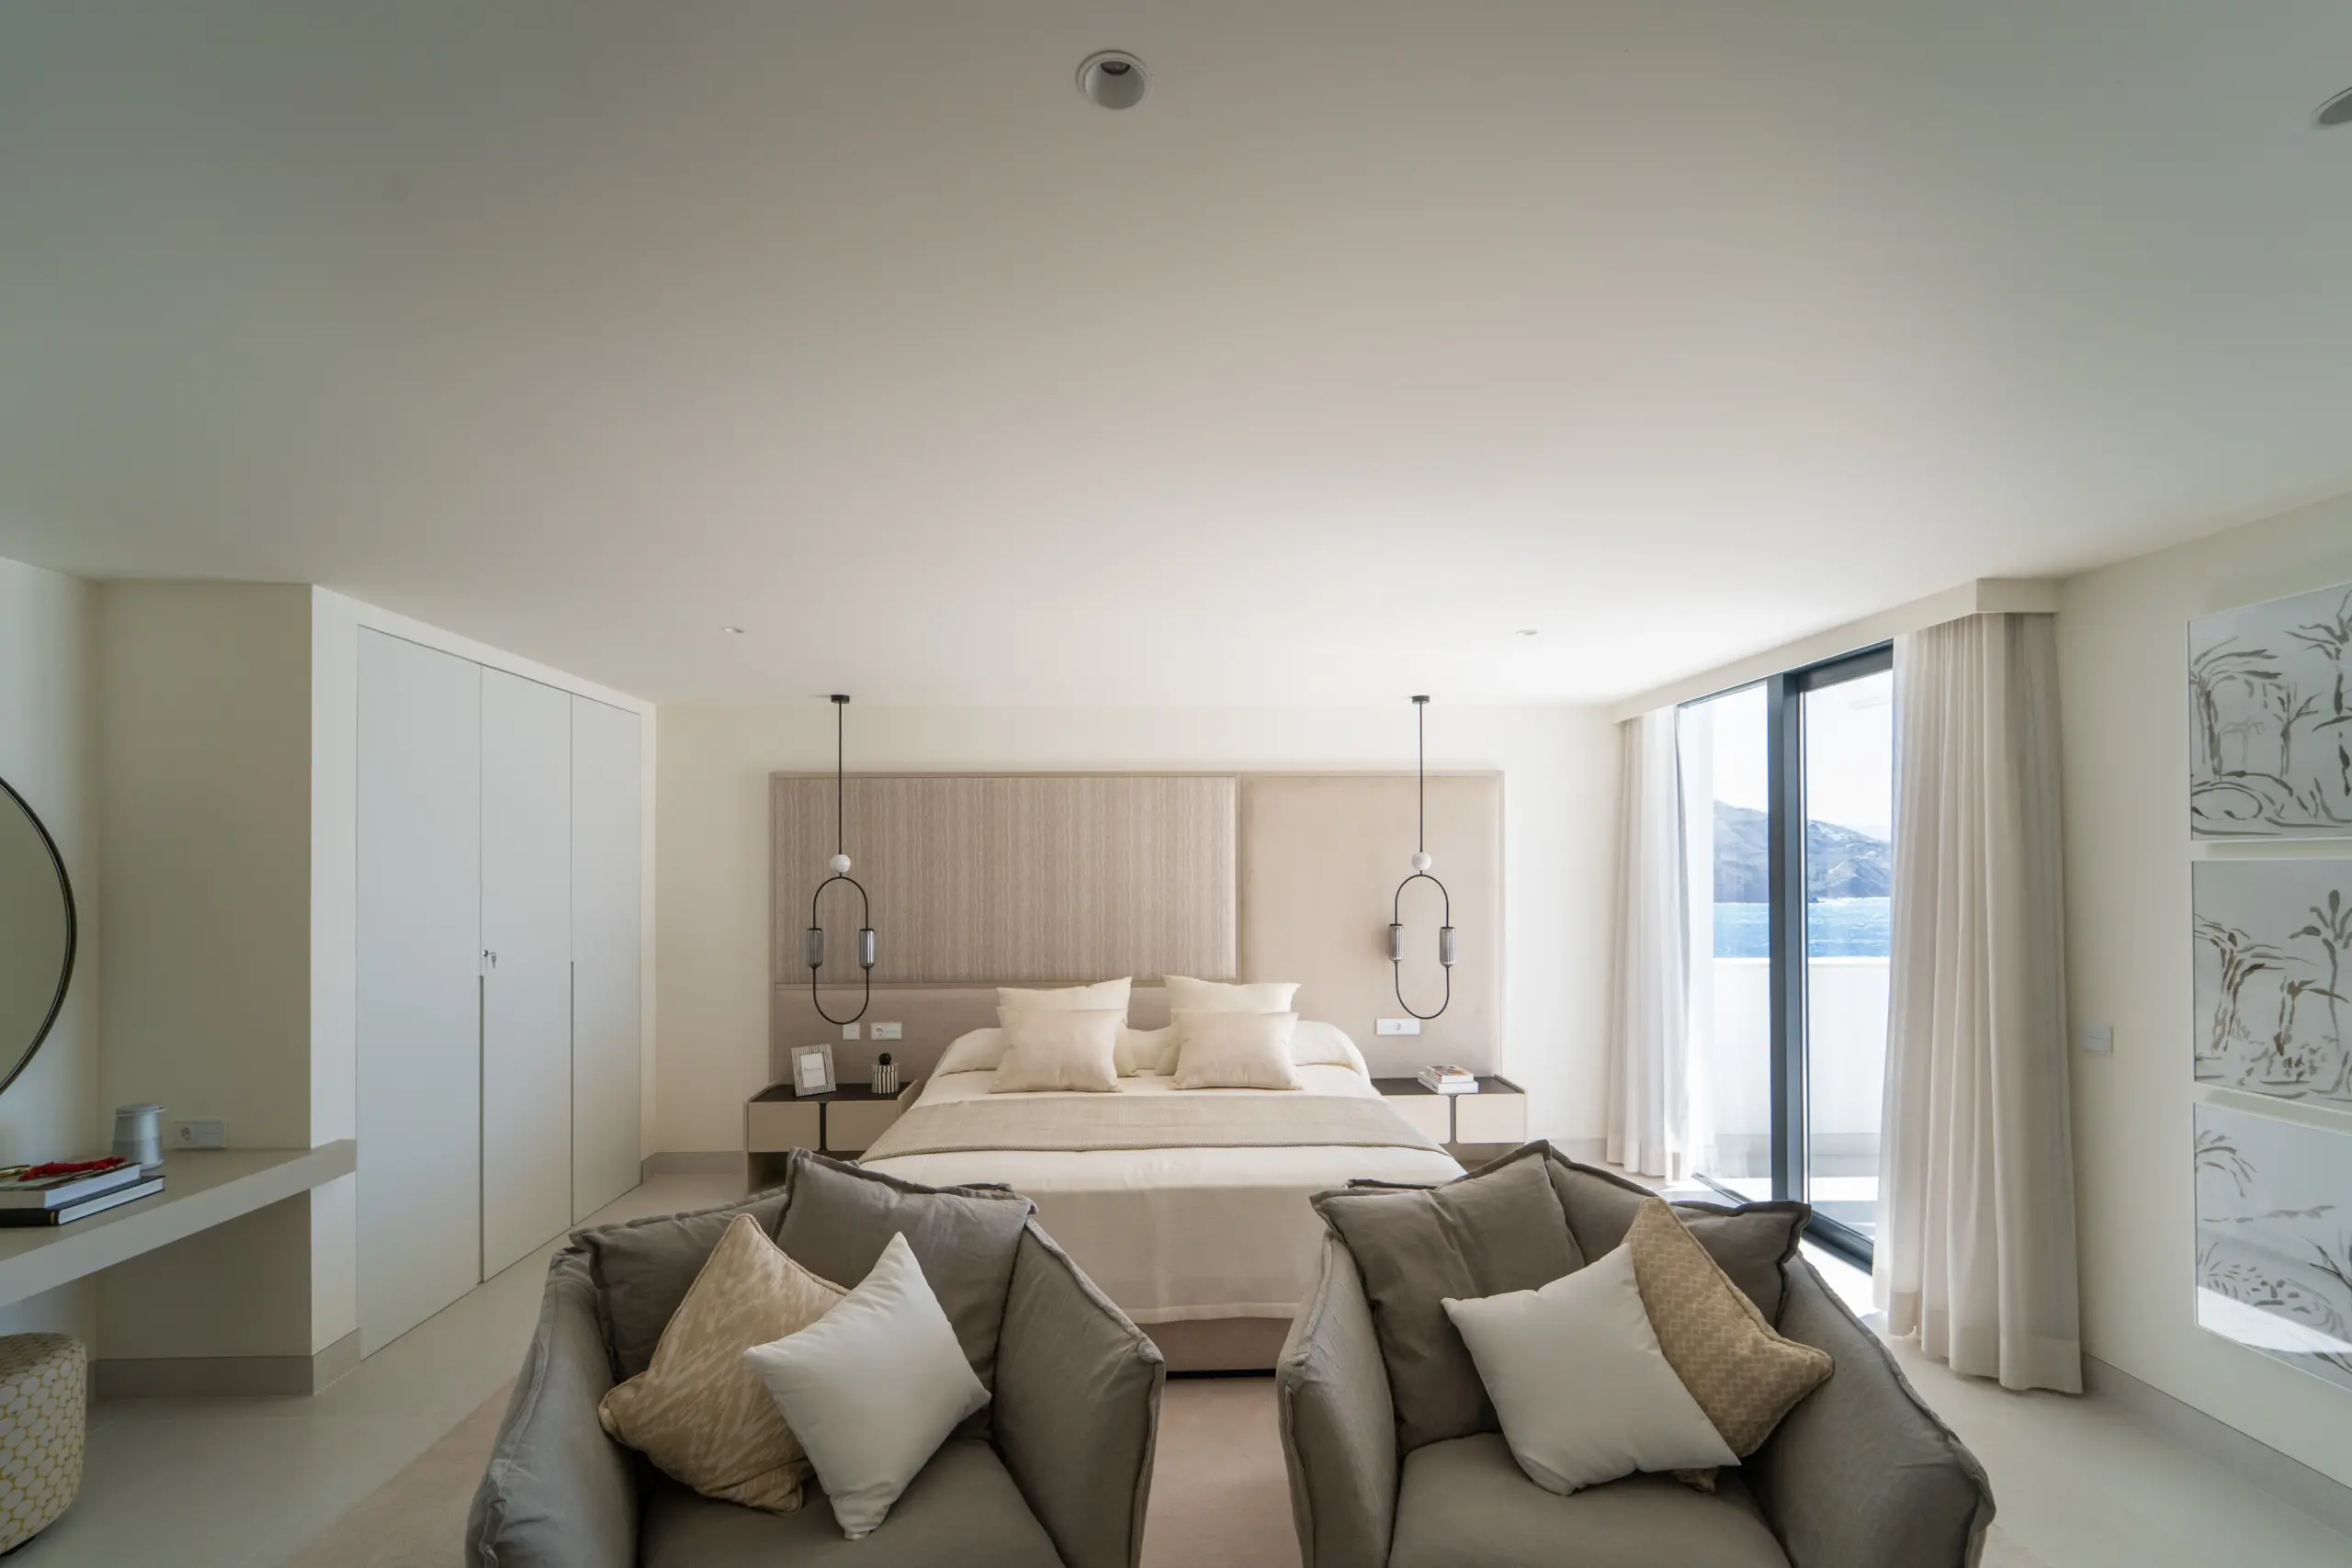 Dormitorio espacioso y moderno con una cama grande en el centro, rodeada de dos sillas cómodas en un área de descanso con cojines. Decoración minimalista en tonos beige y blancos. Grandes ventanales ofrecen una vista impresionante del mar y montañas al fondo.